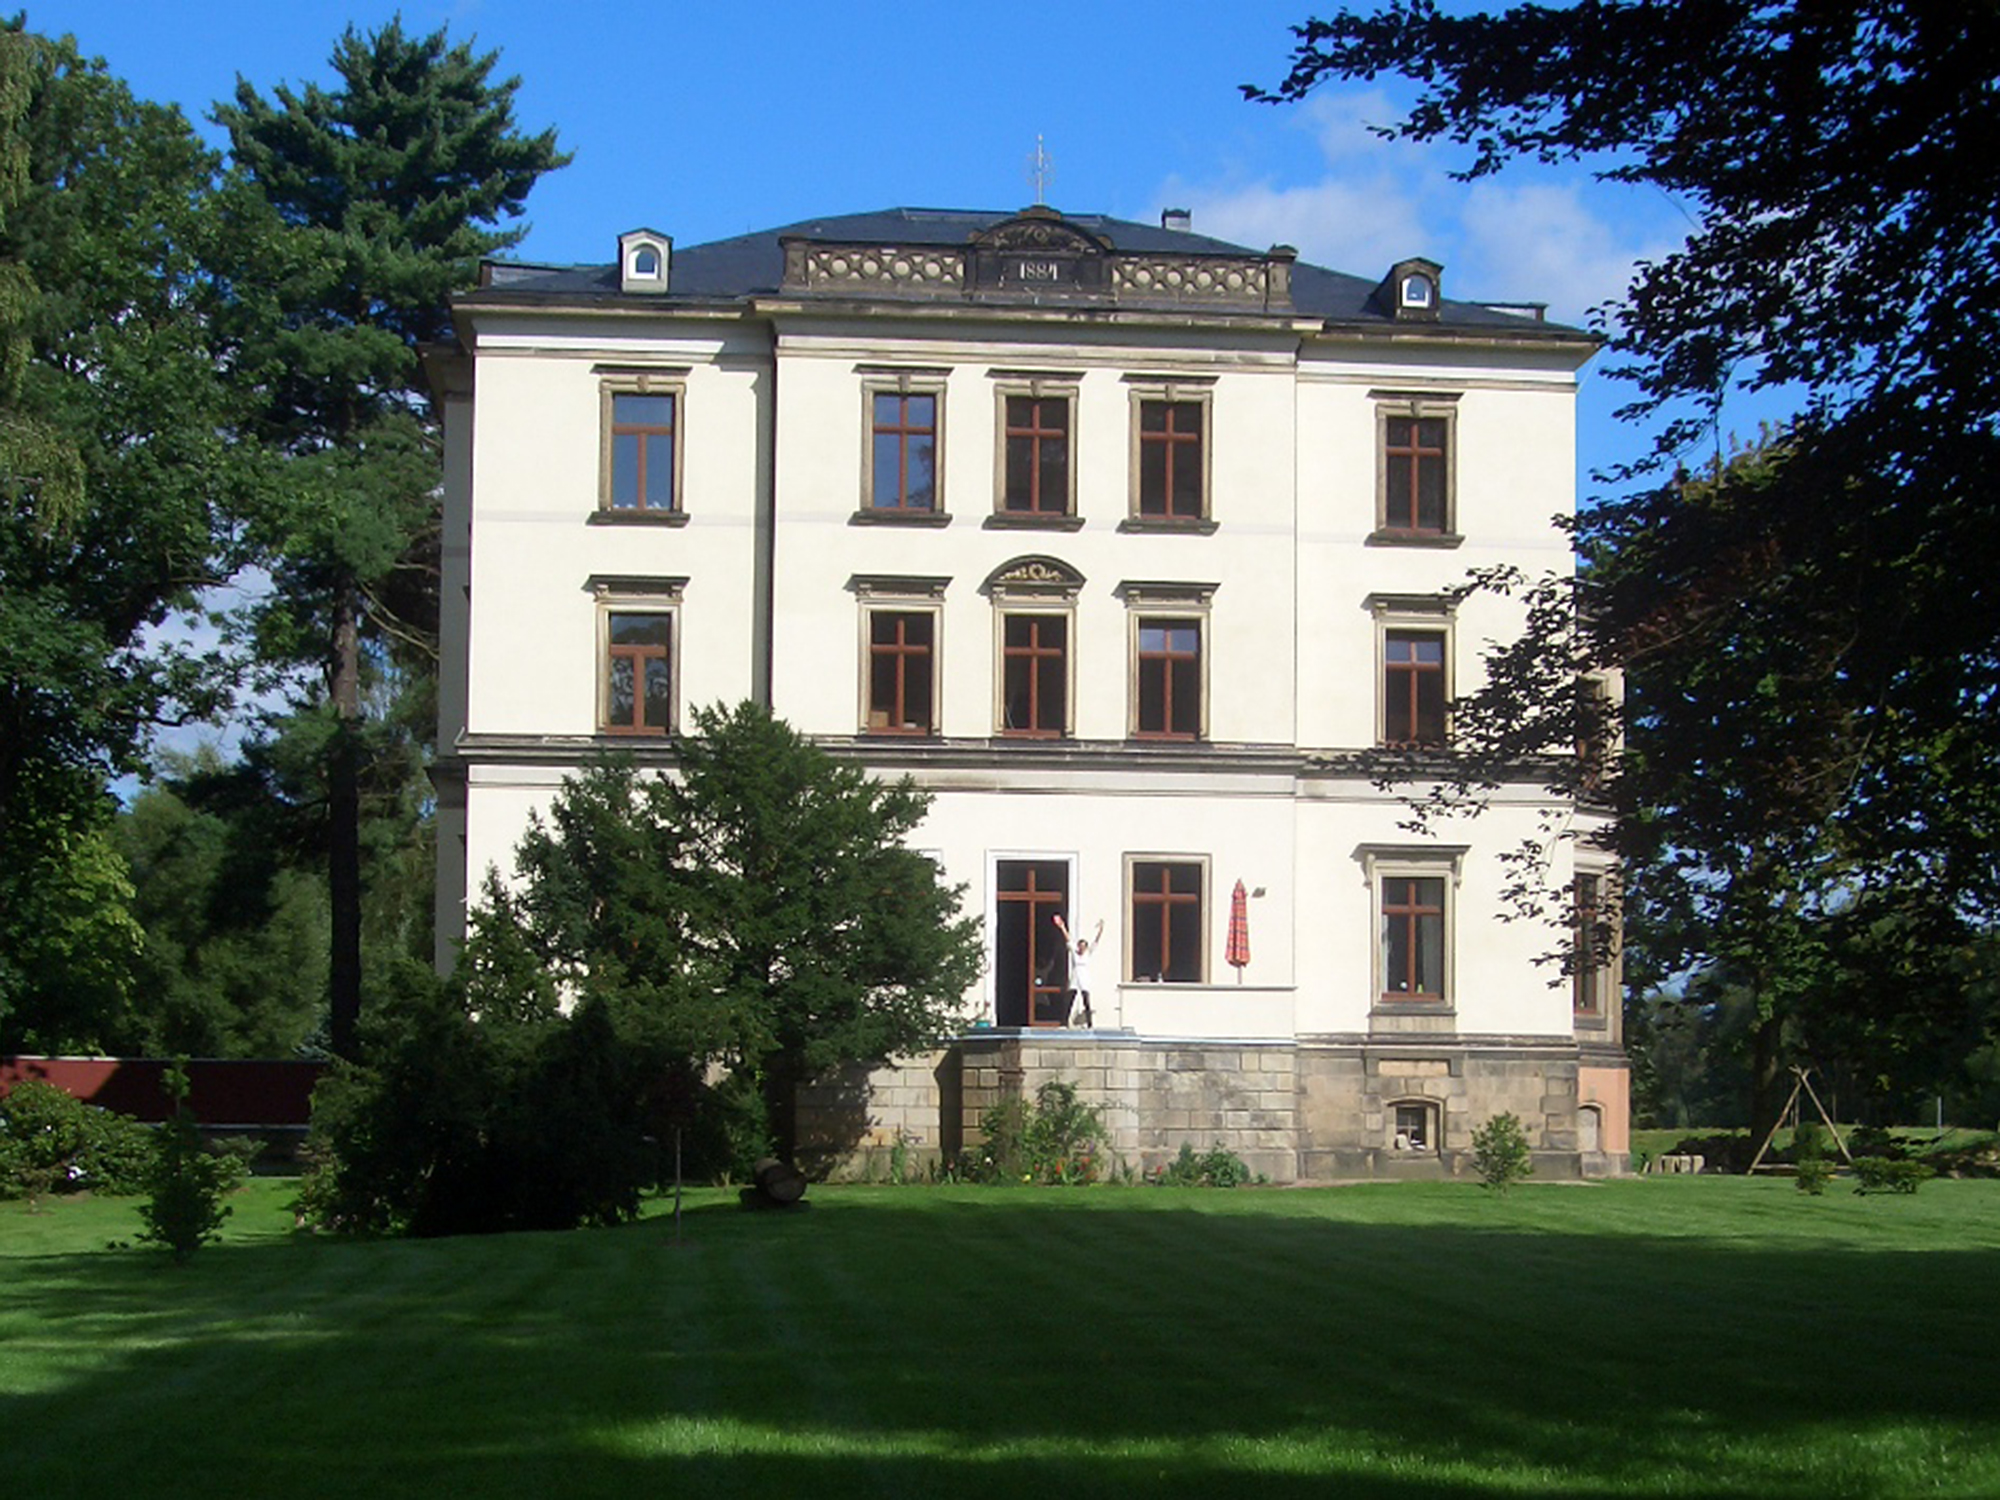 Villa Gückelsberg